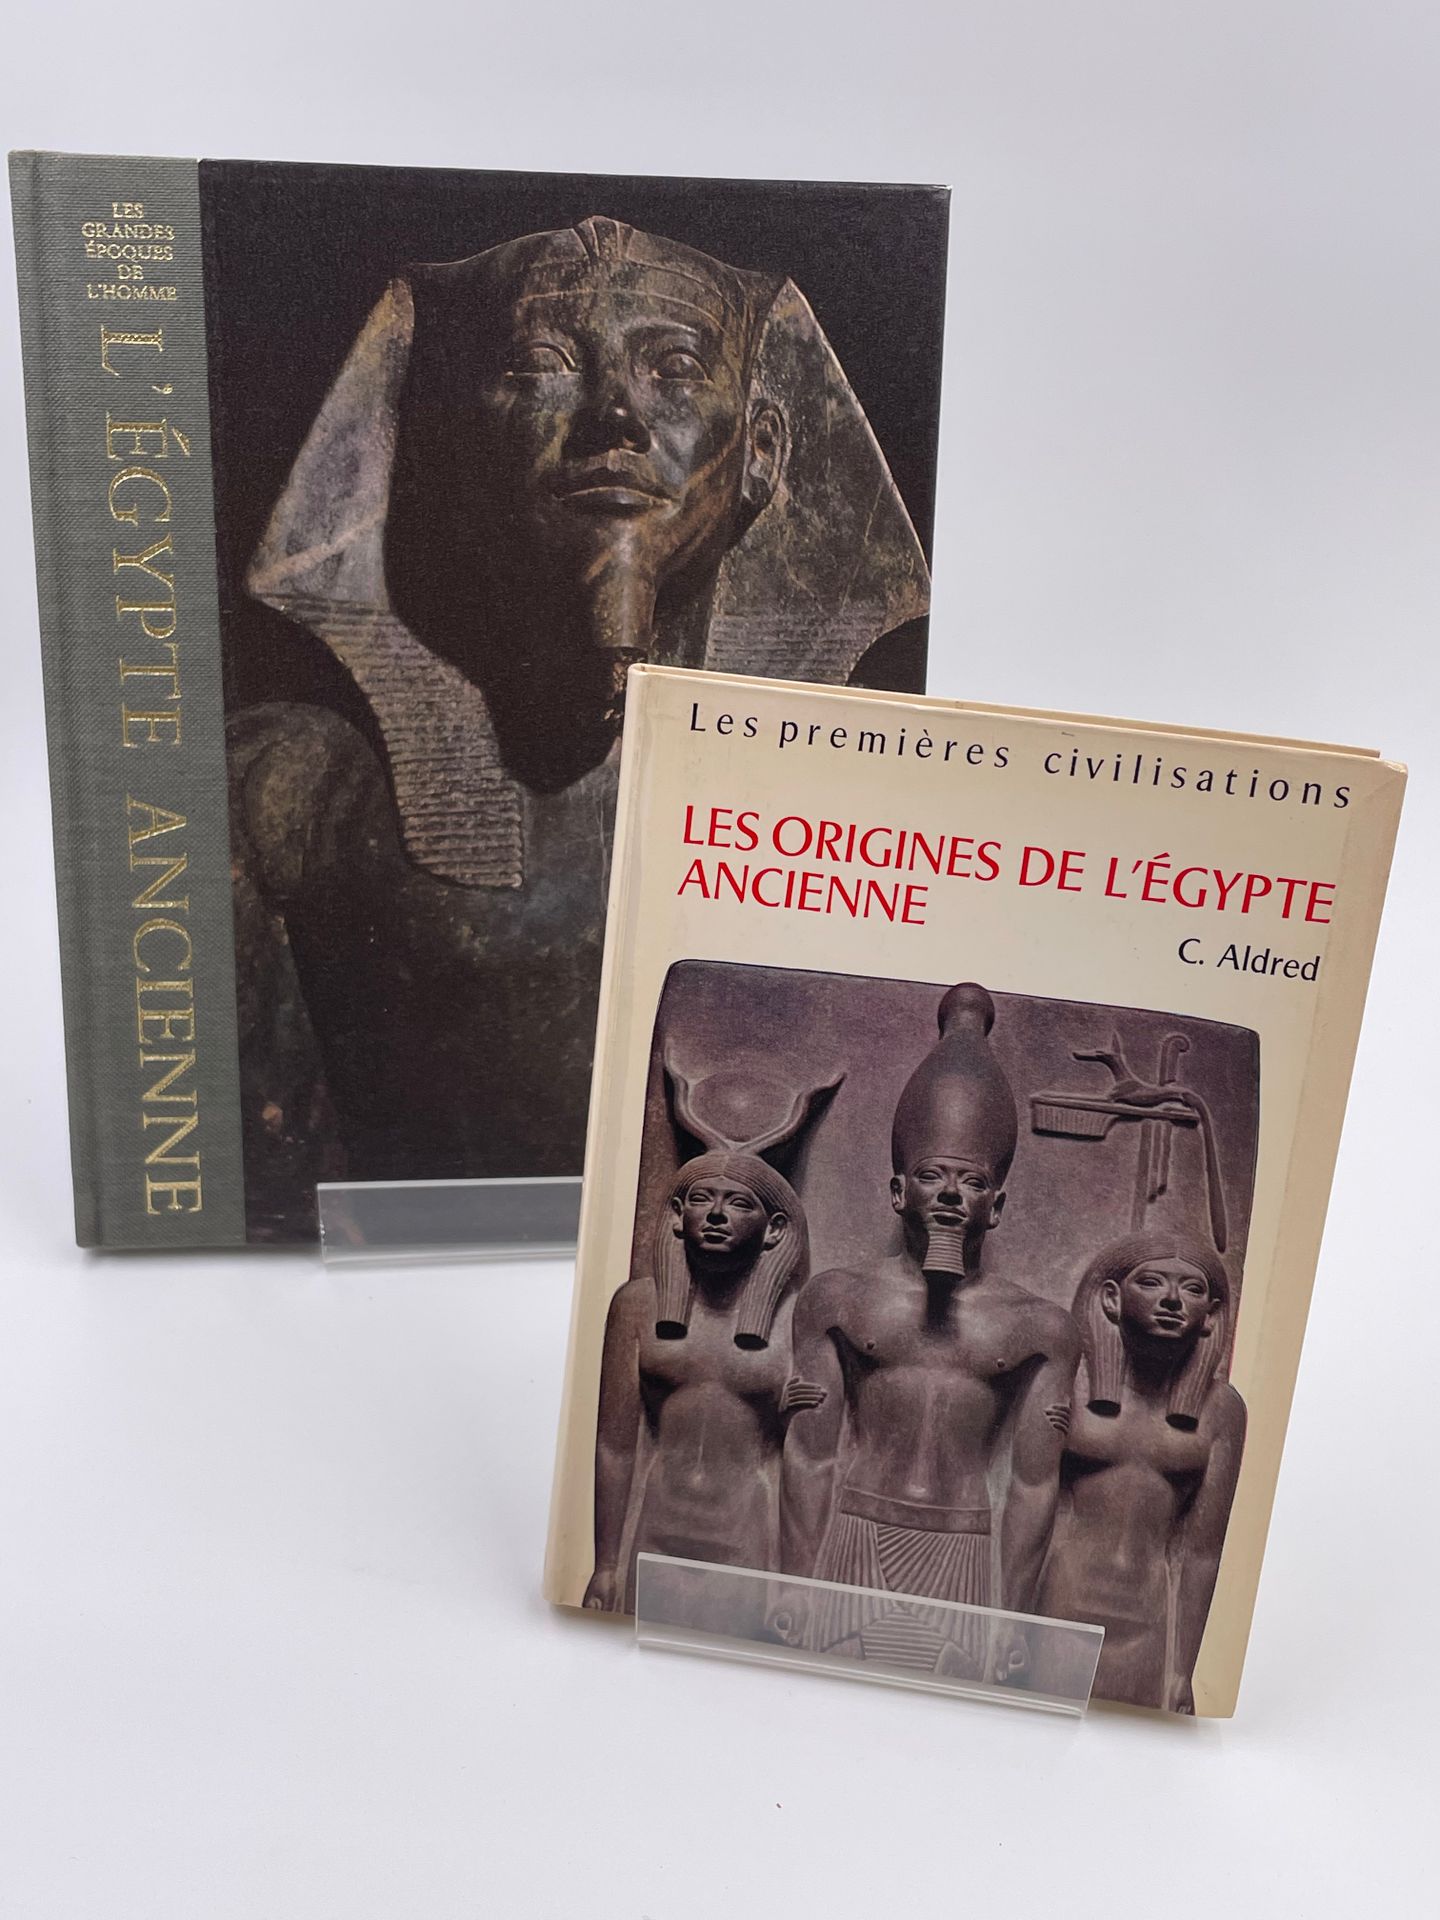 Null 2卷。 
- 古埃及》，莱昂内尔-卡森，《人类的大时代--世界文明史》合集，时间-生活出版社，1976年。
- 古埃及的起源》，西里尔-阿尔德雷德，红&hellip;